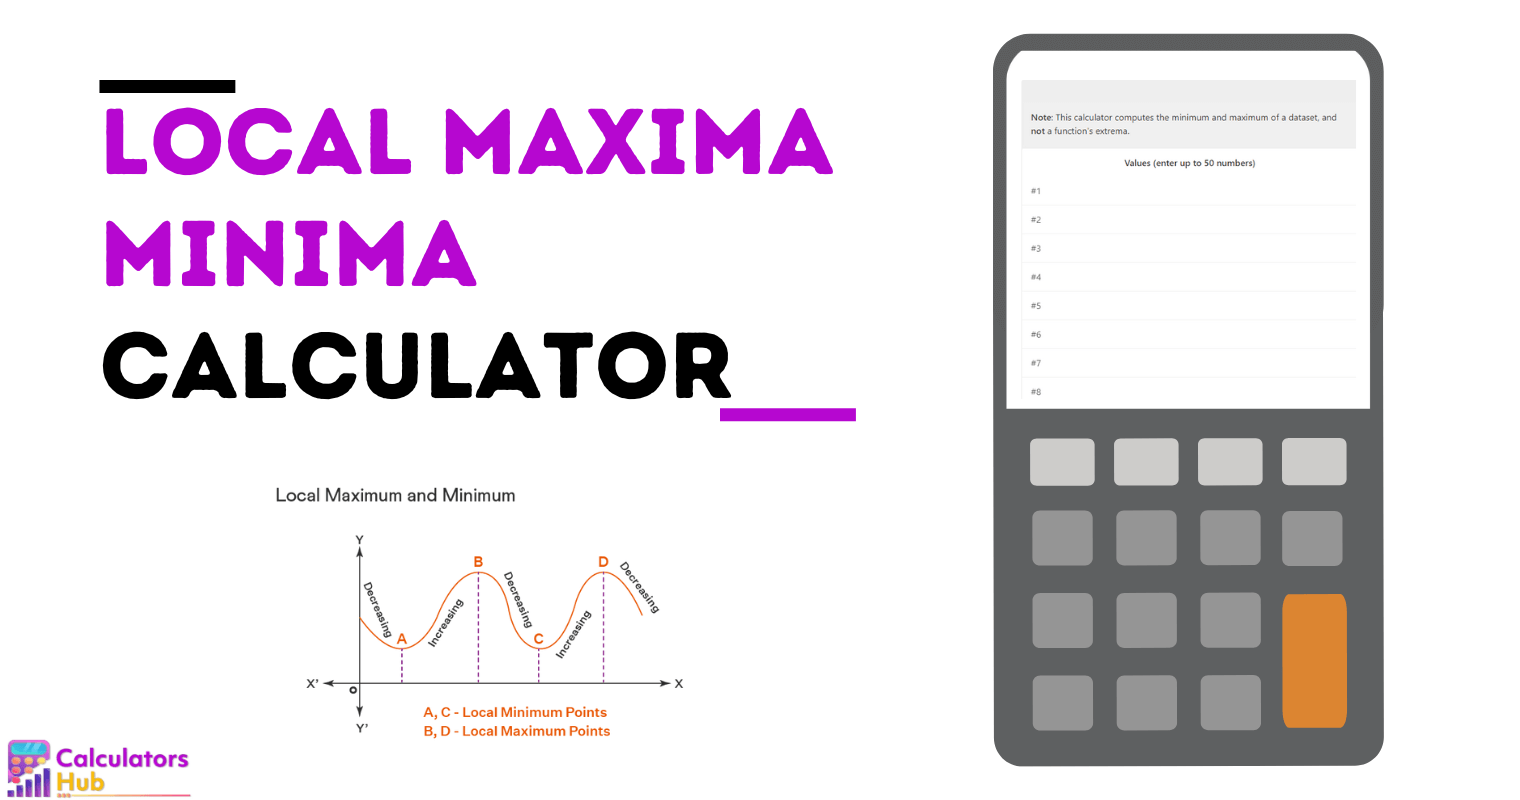 Local Maxima Minima Calculator